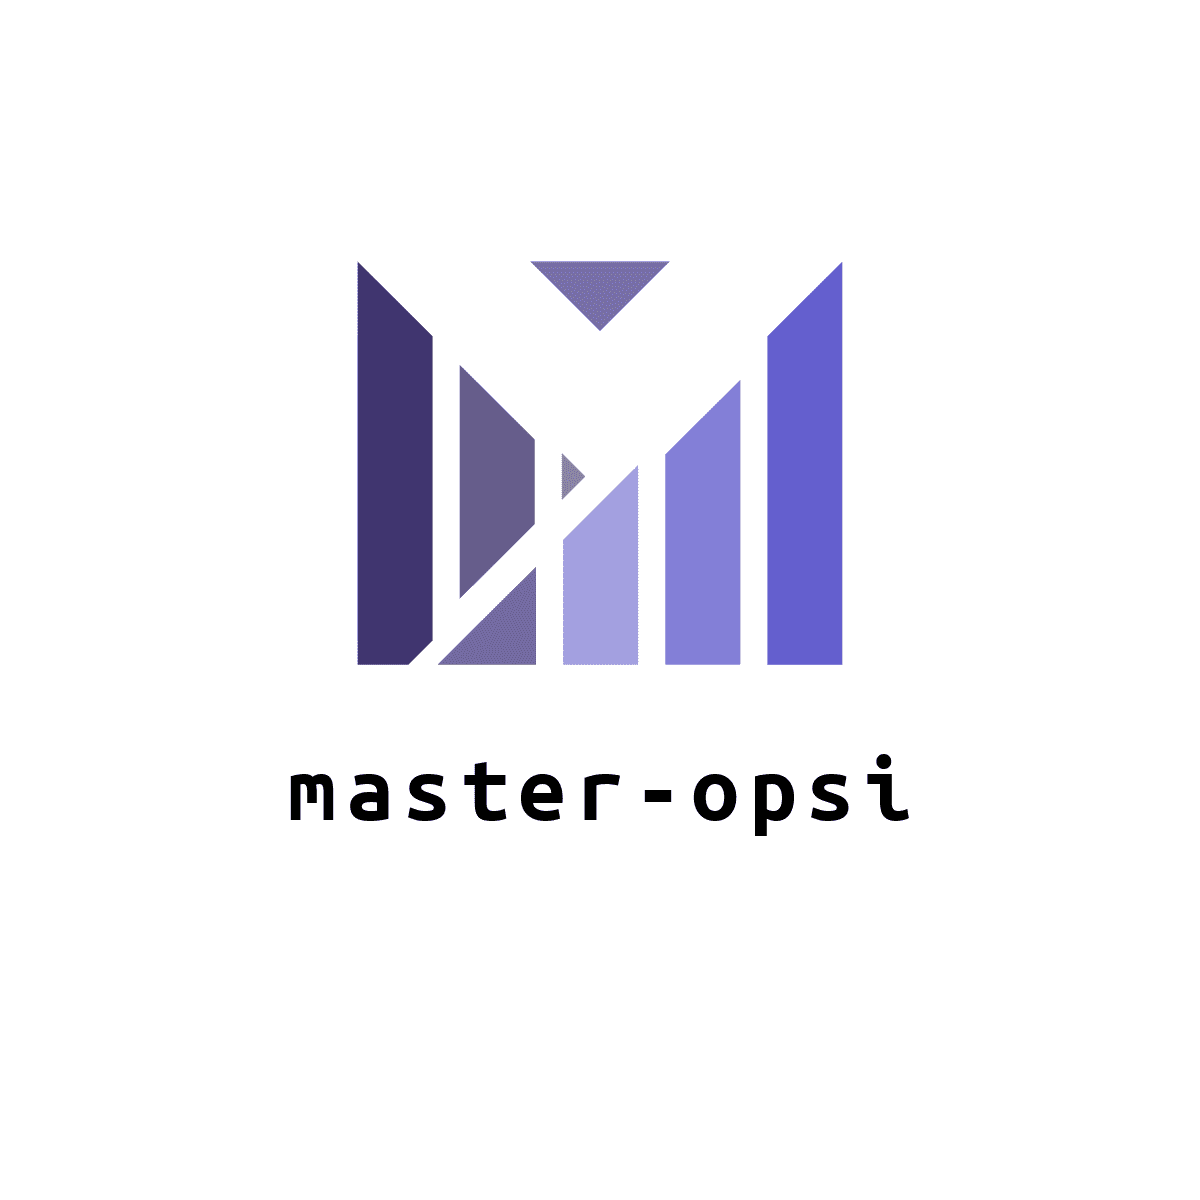 Master-opsi